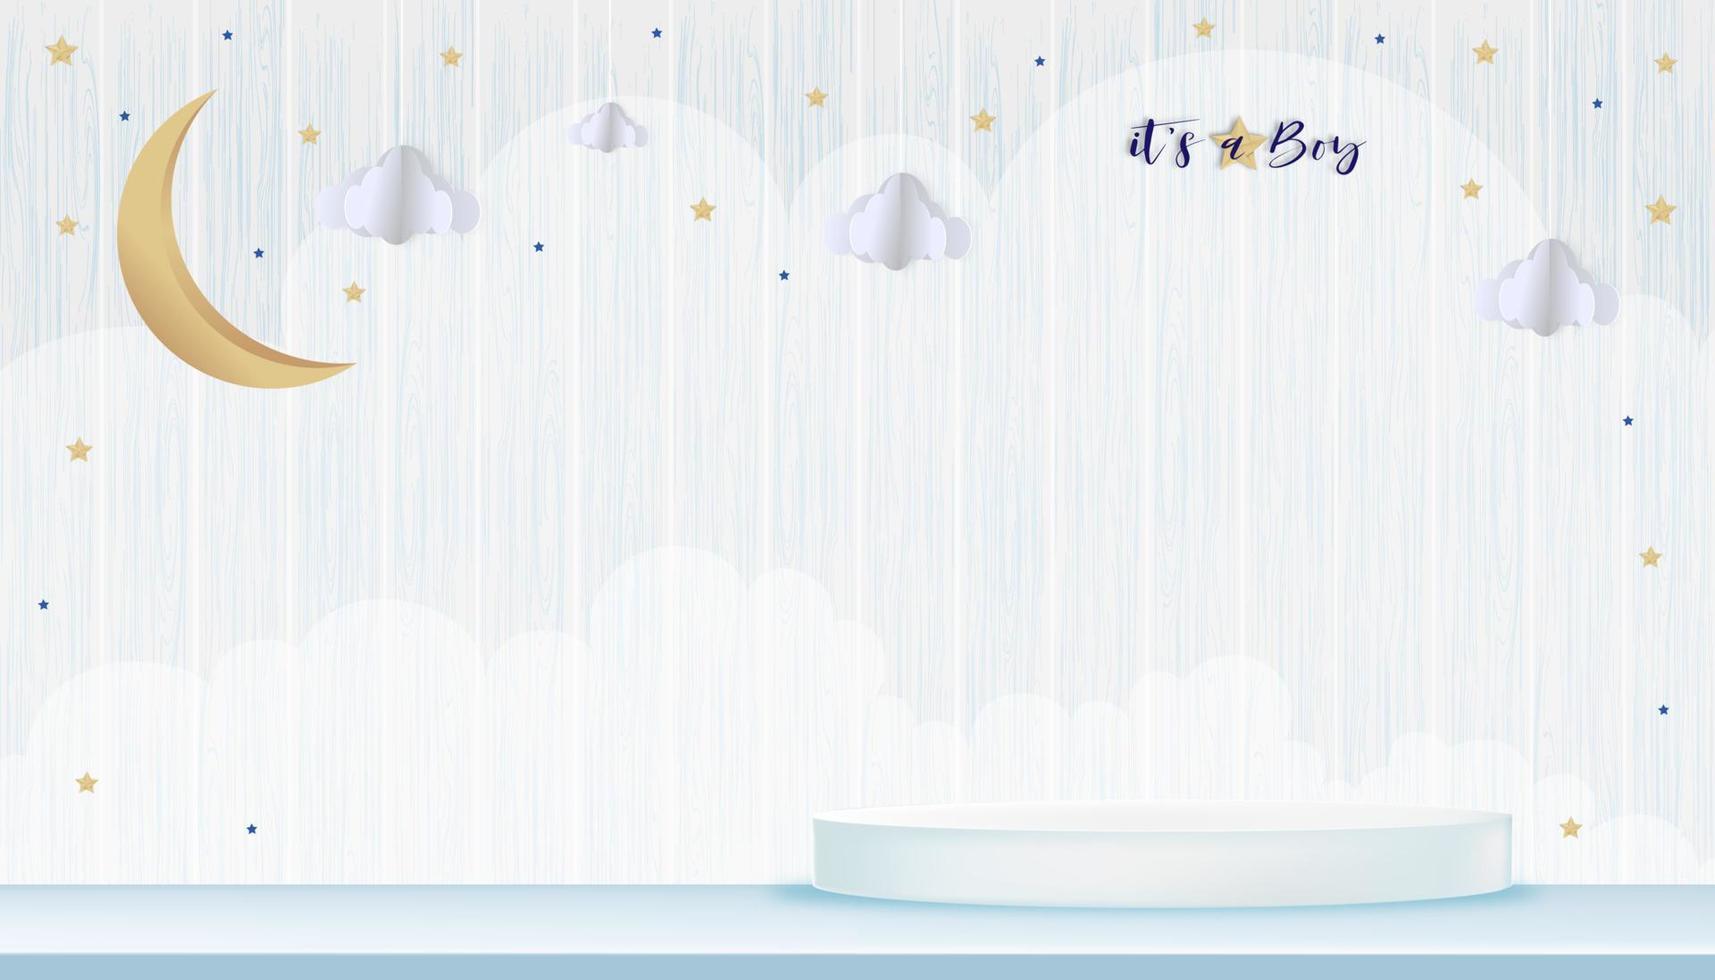 vetor para cartão de chuveiro de menino em fundo de madeira, paisagem de origami abstrato de arte de papel bonito, lua crescente e estrelas no céu azul e pódio 3d, corte de papel com espaço de cópia para fotos do bebê